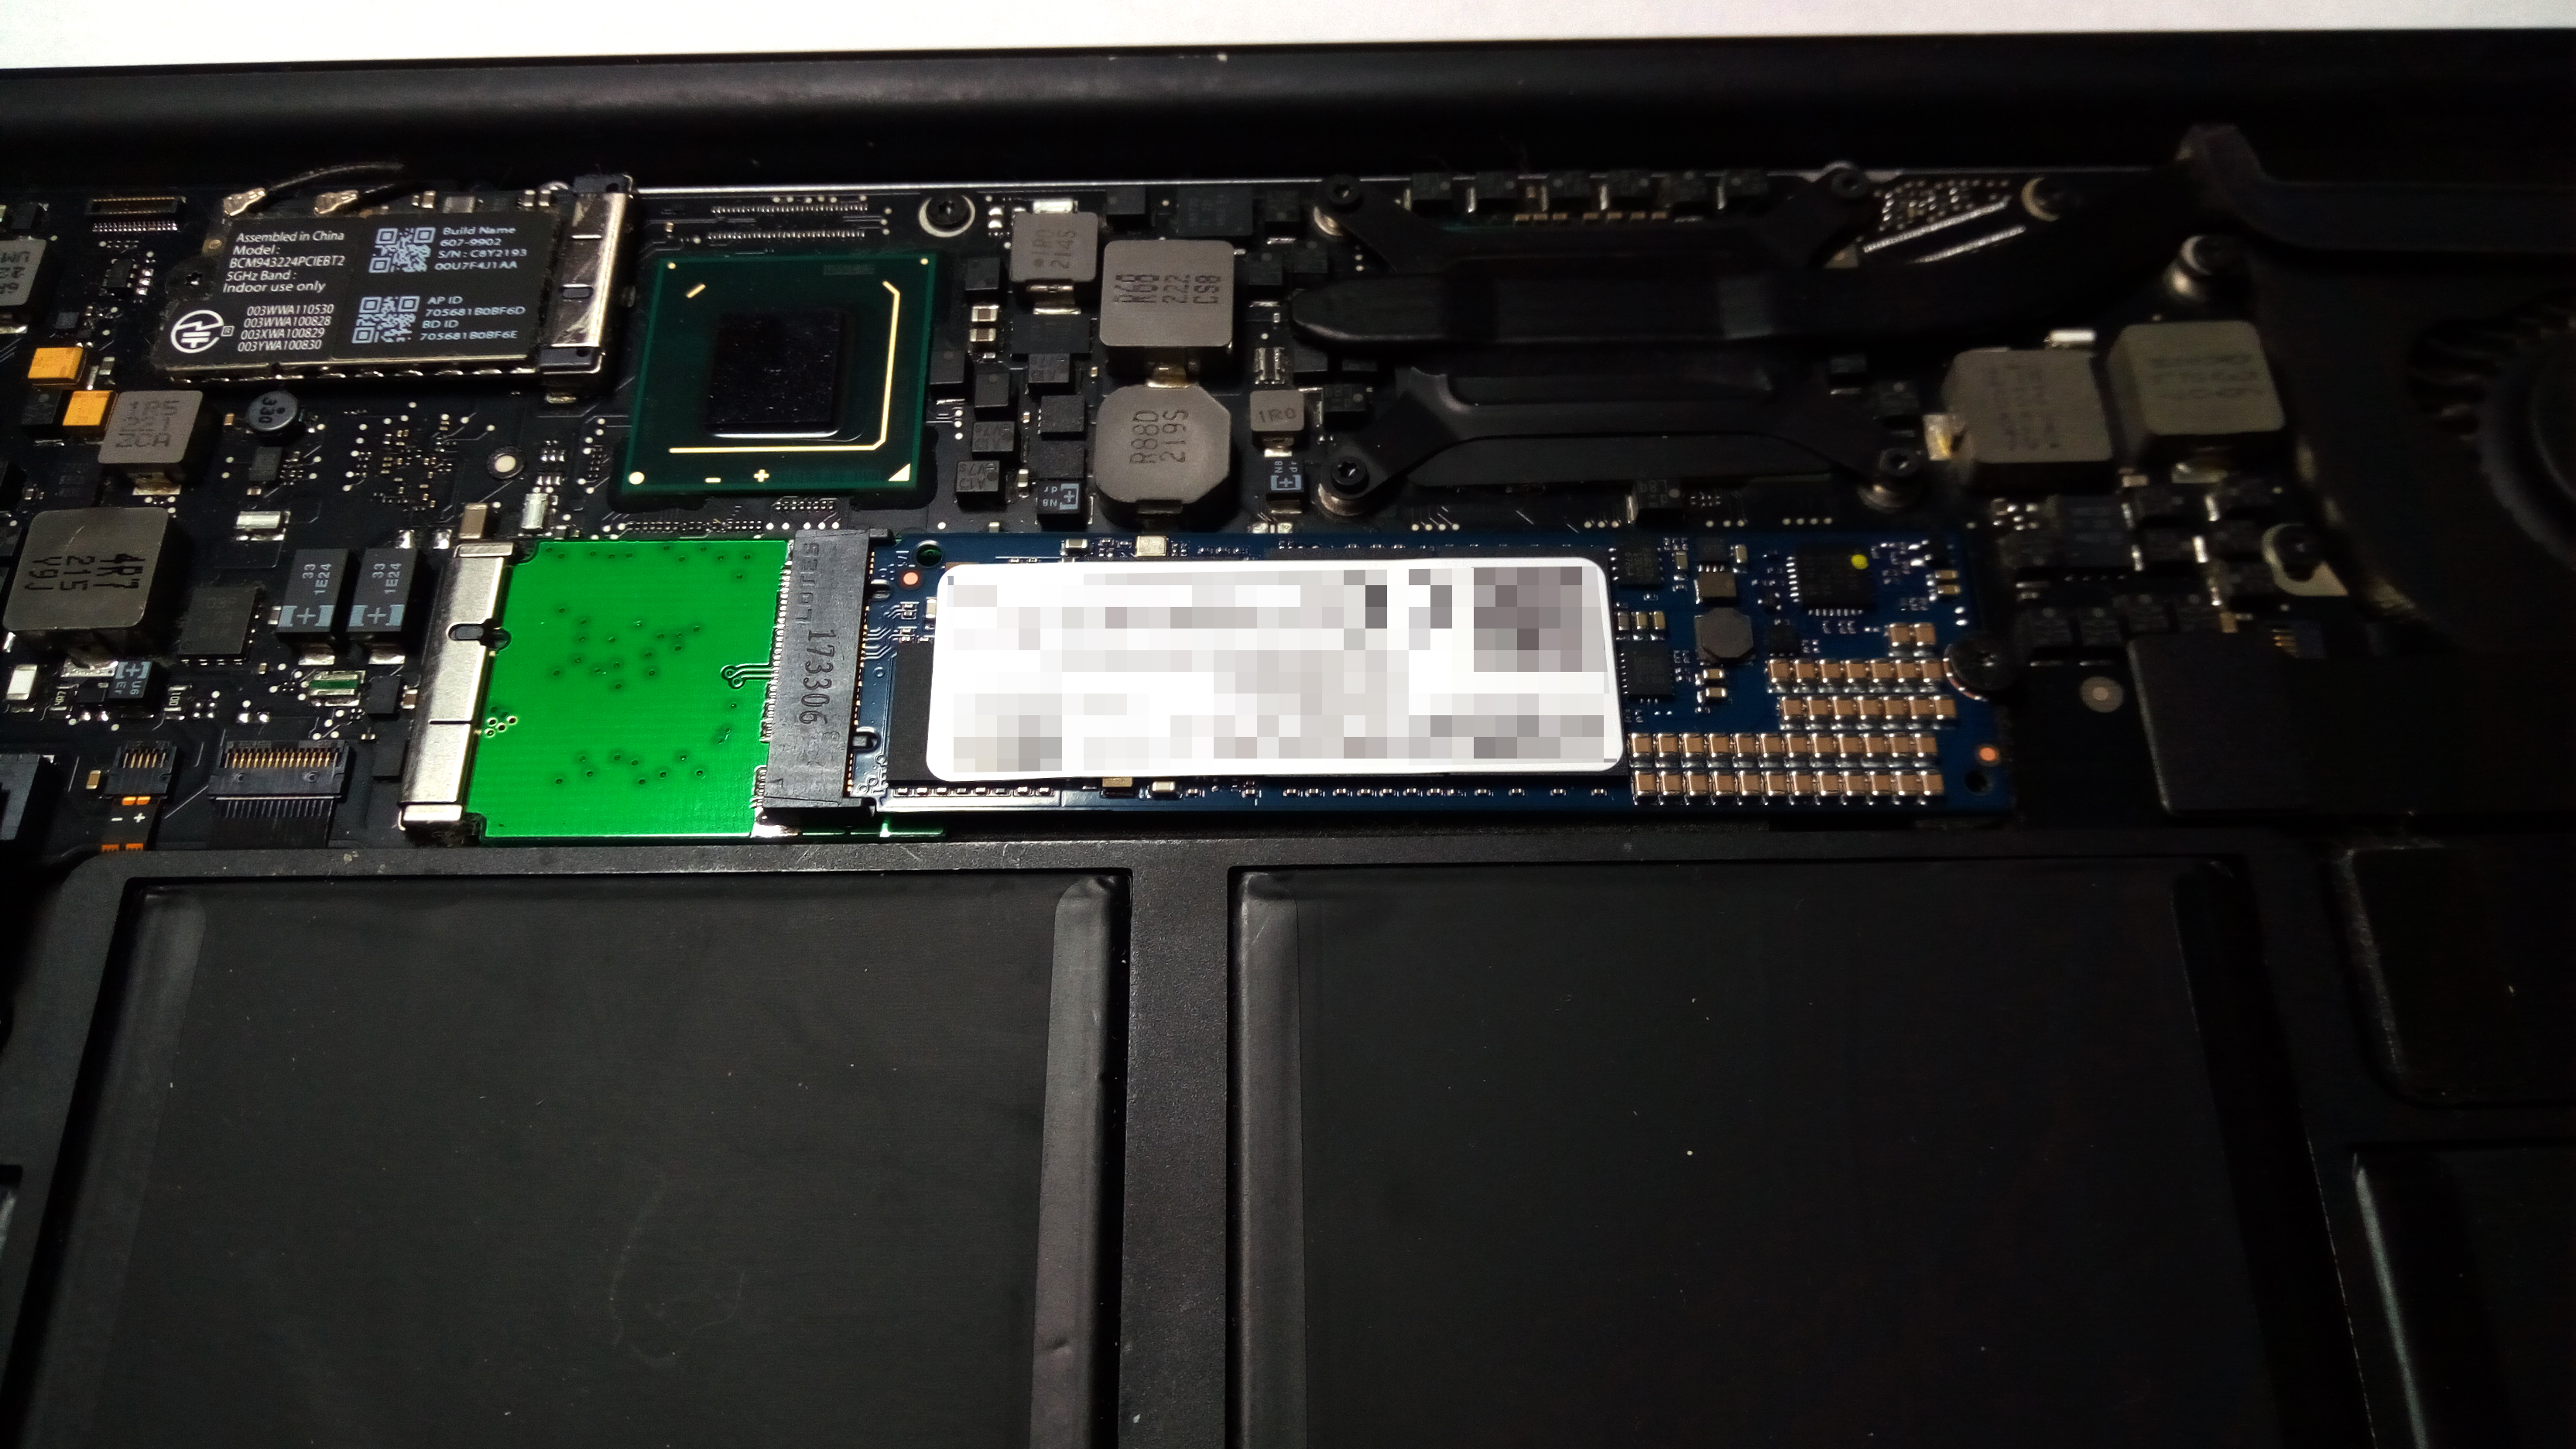 Macbook AirのSSDを1TBに交換してみたのでその手順を紹介するよ